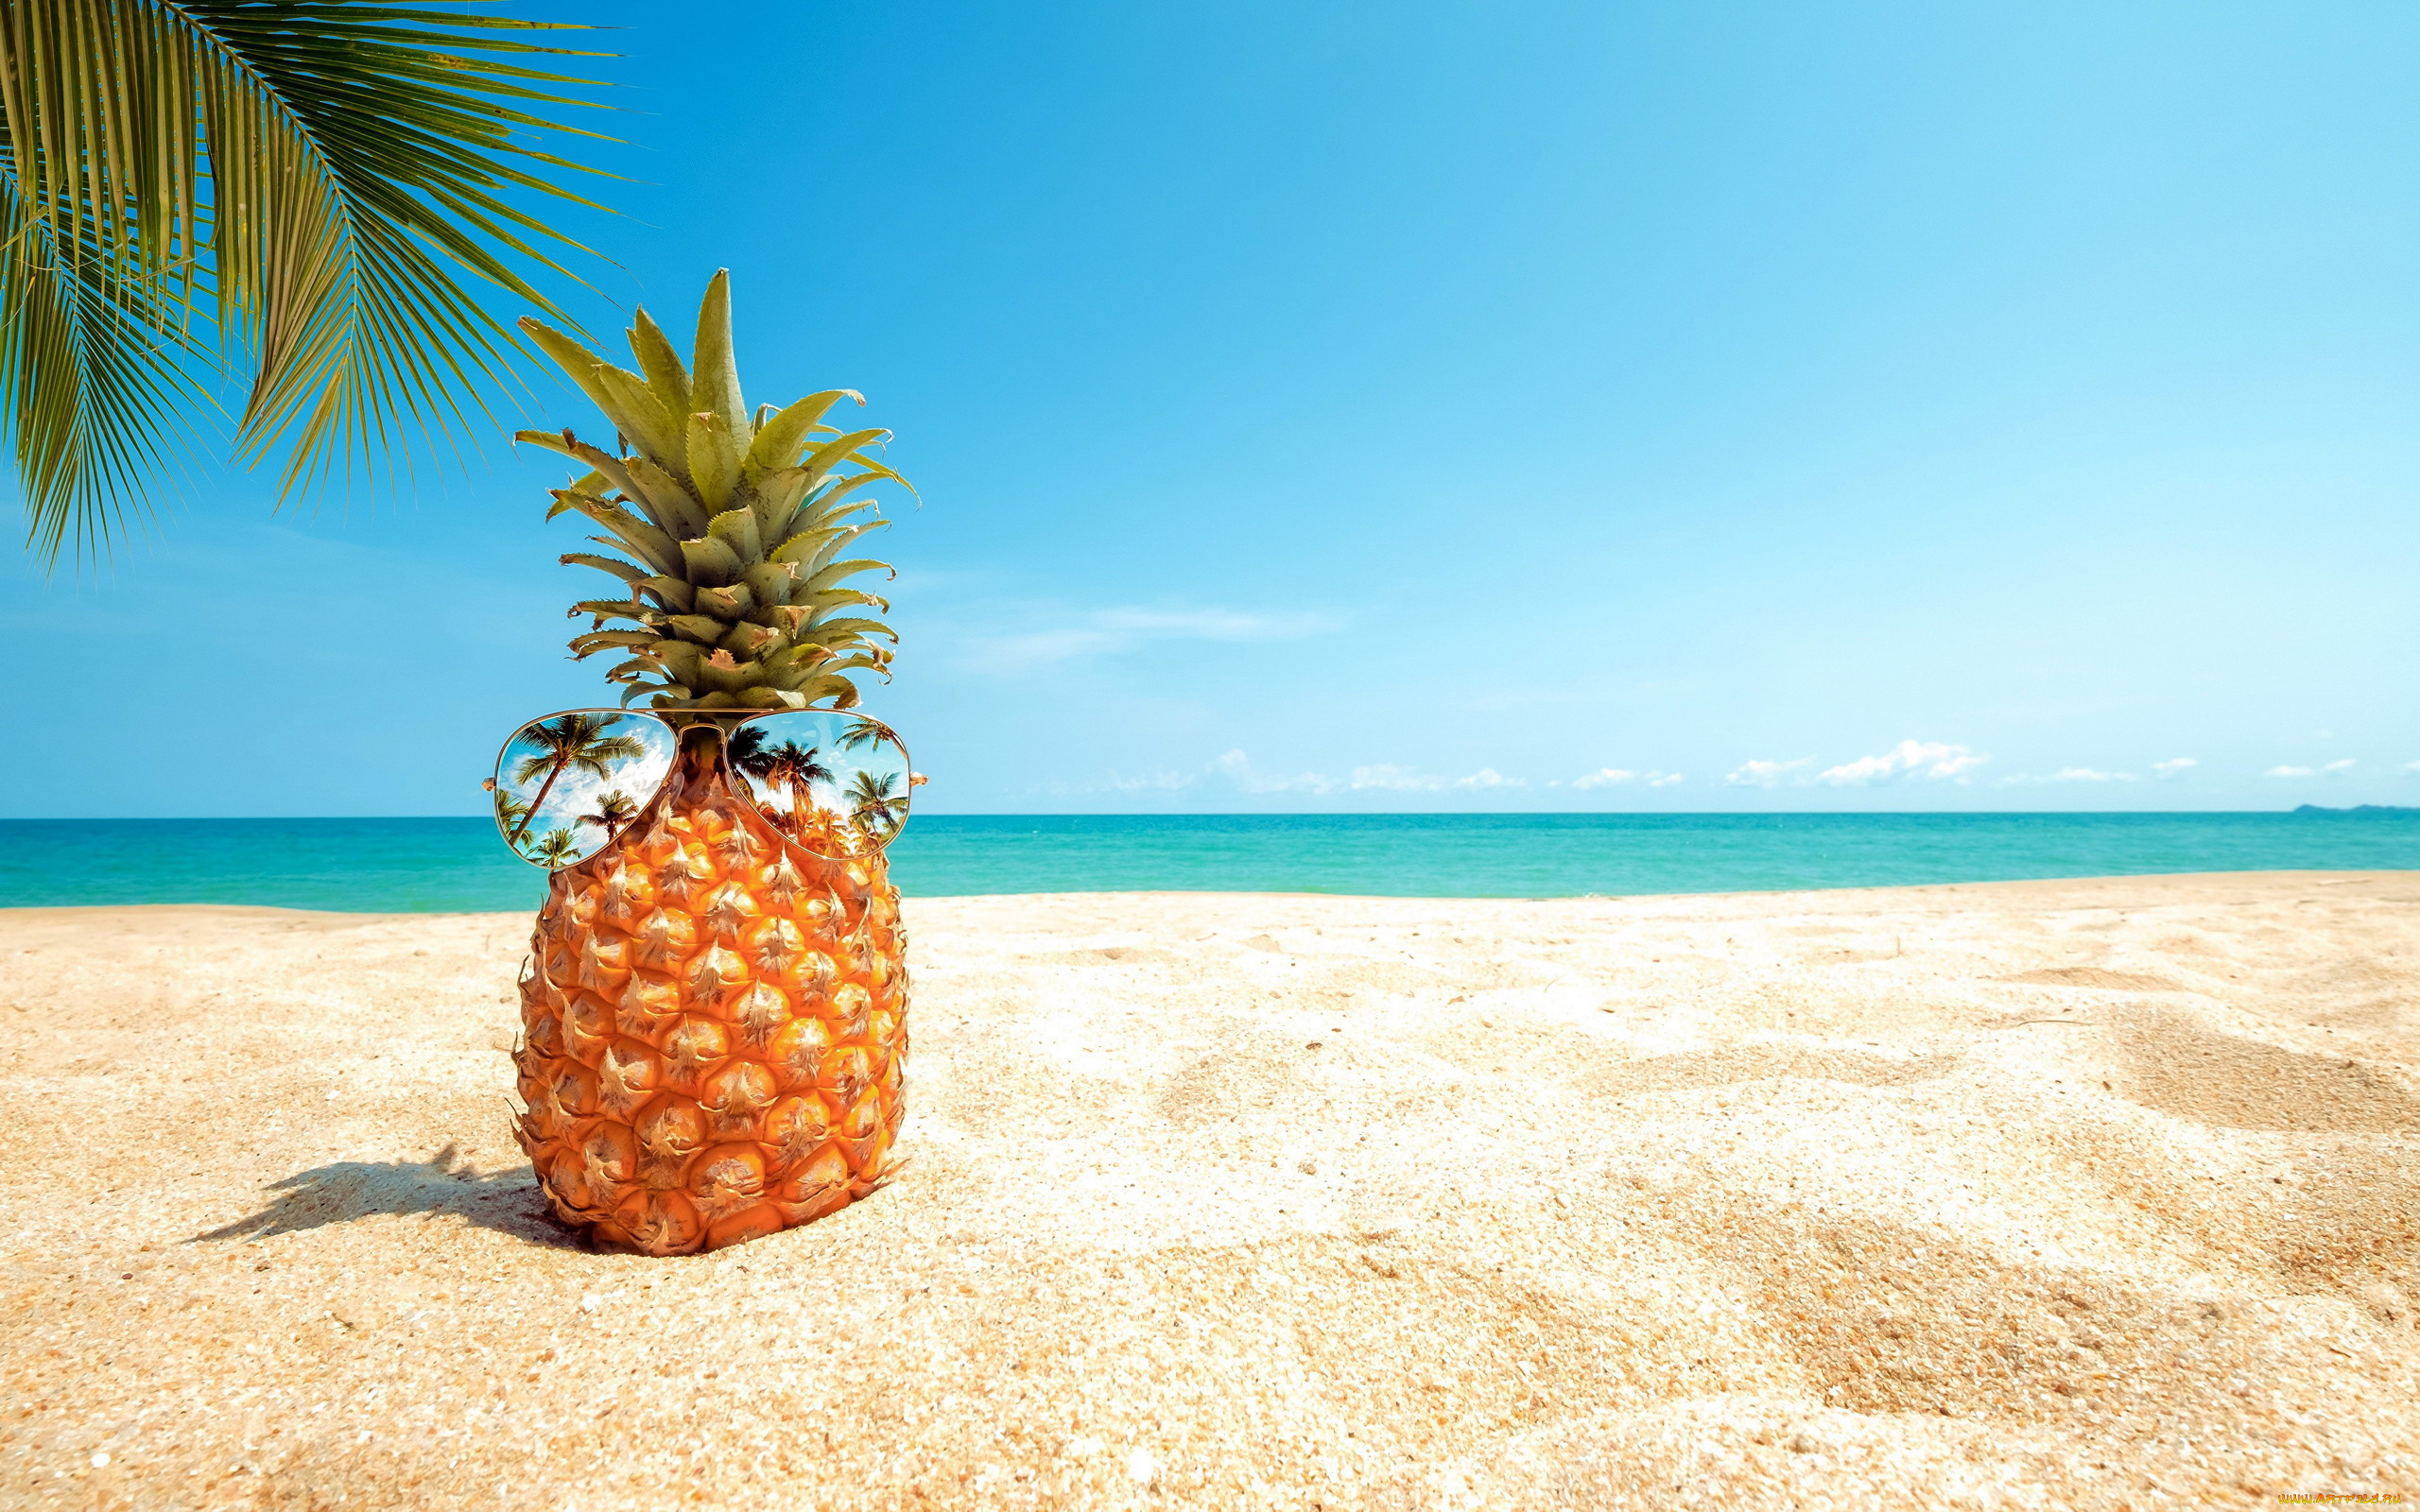 еда, ананас, пальма, пляж, песок, очки, отражение